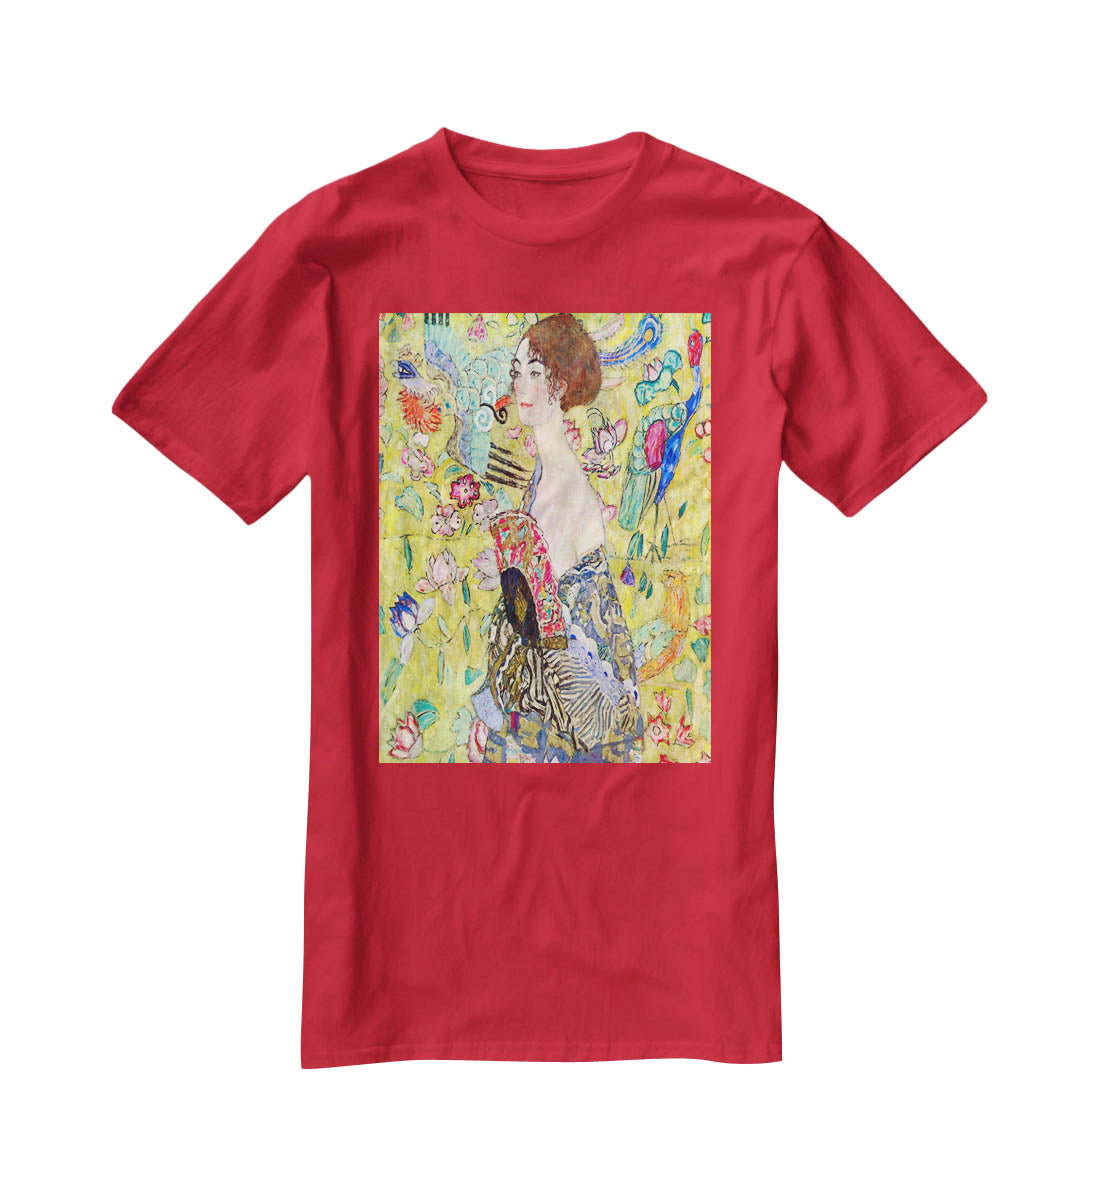 Lady with fan by Klimt T-Shirt - Canvas Art Rocks - 4